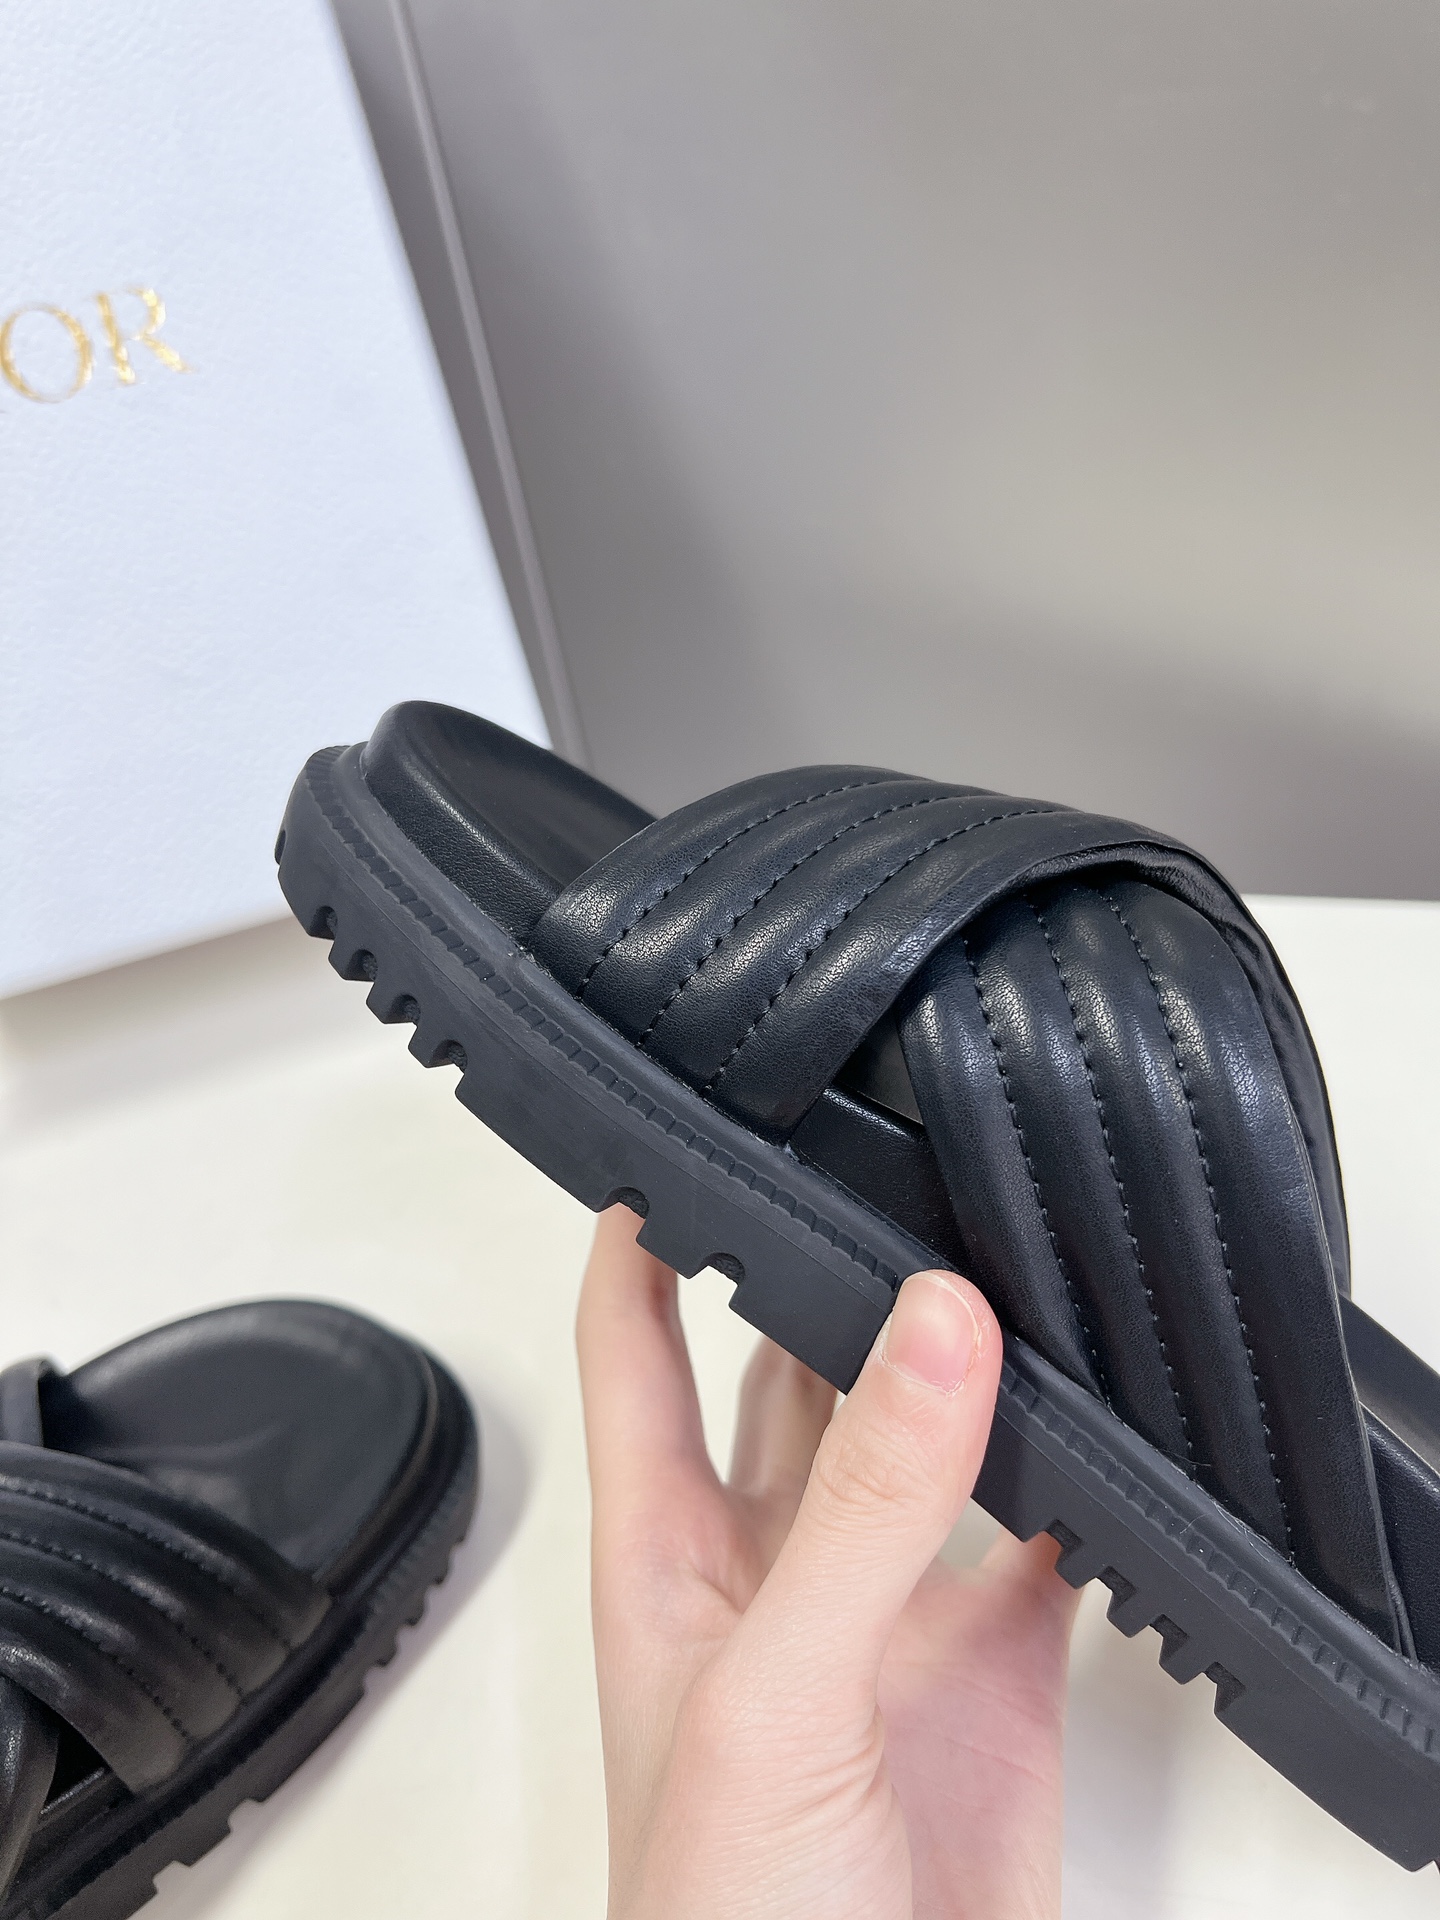 Dior迪奥春夏最新款凉鞋超多明星网红种草经典的版型设计上迪奥LOGO丝印点缀超好看超百搭上脚非常柔软️